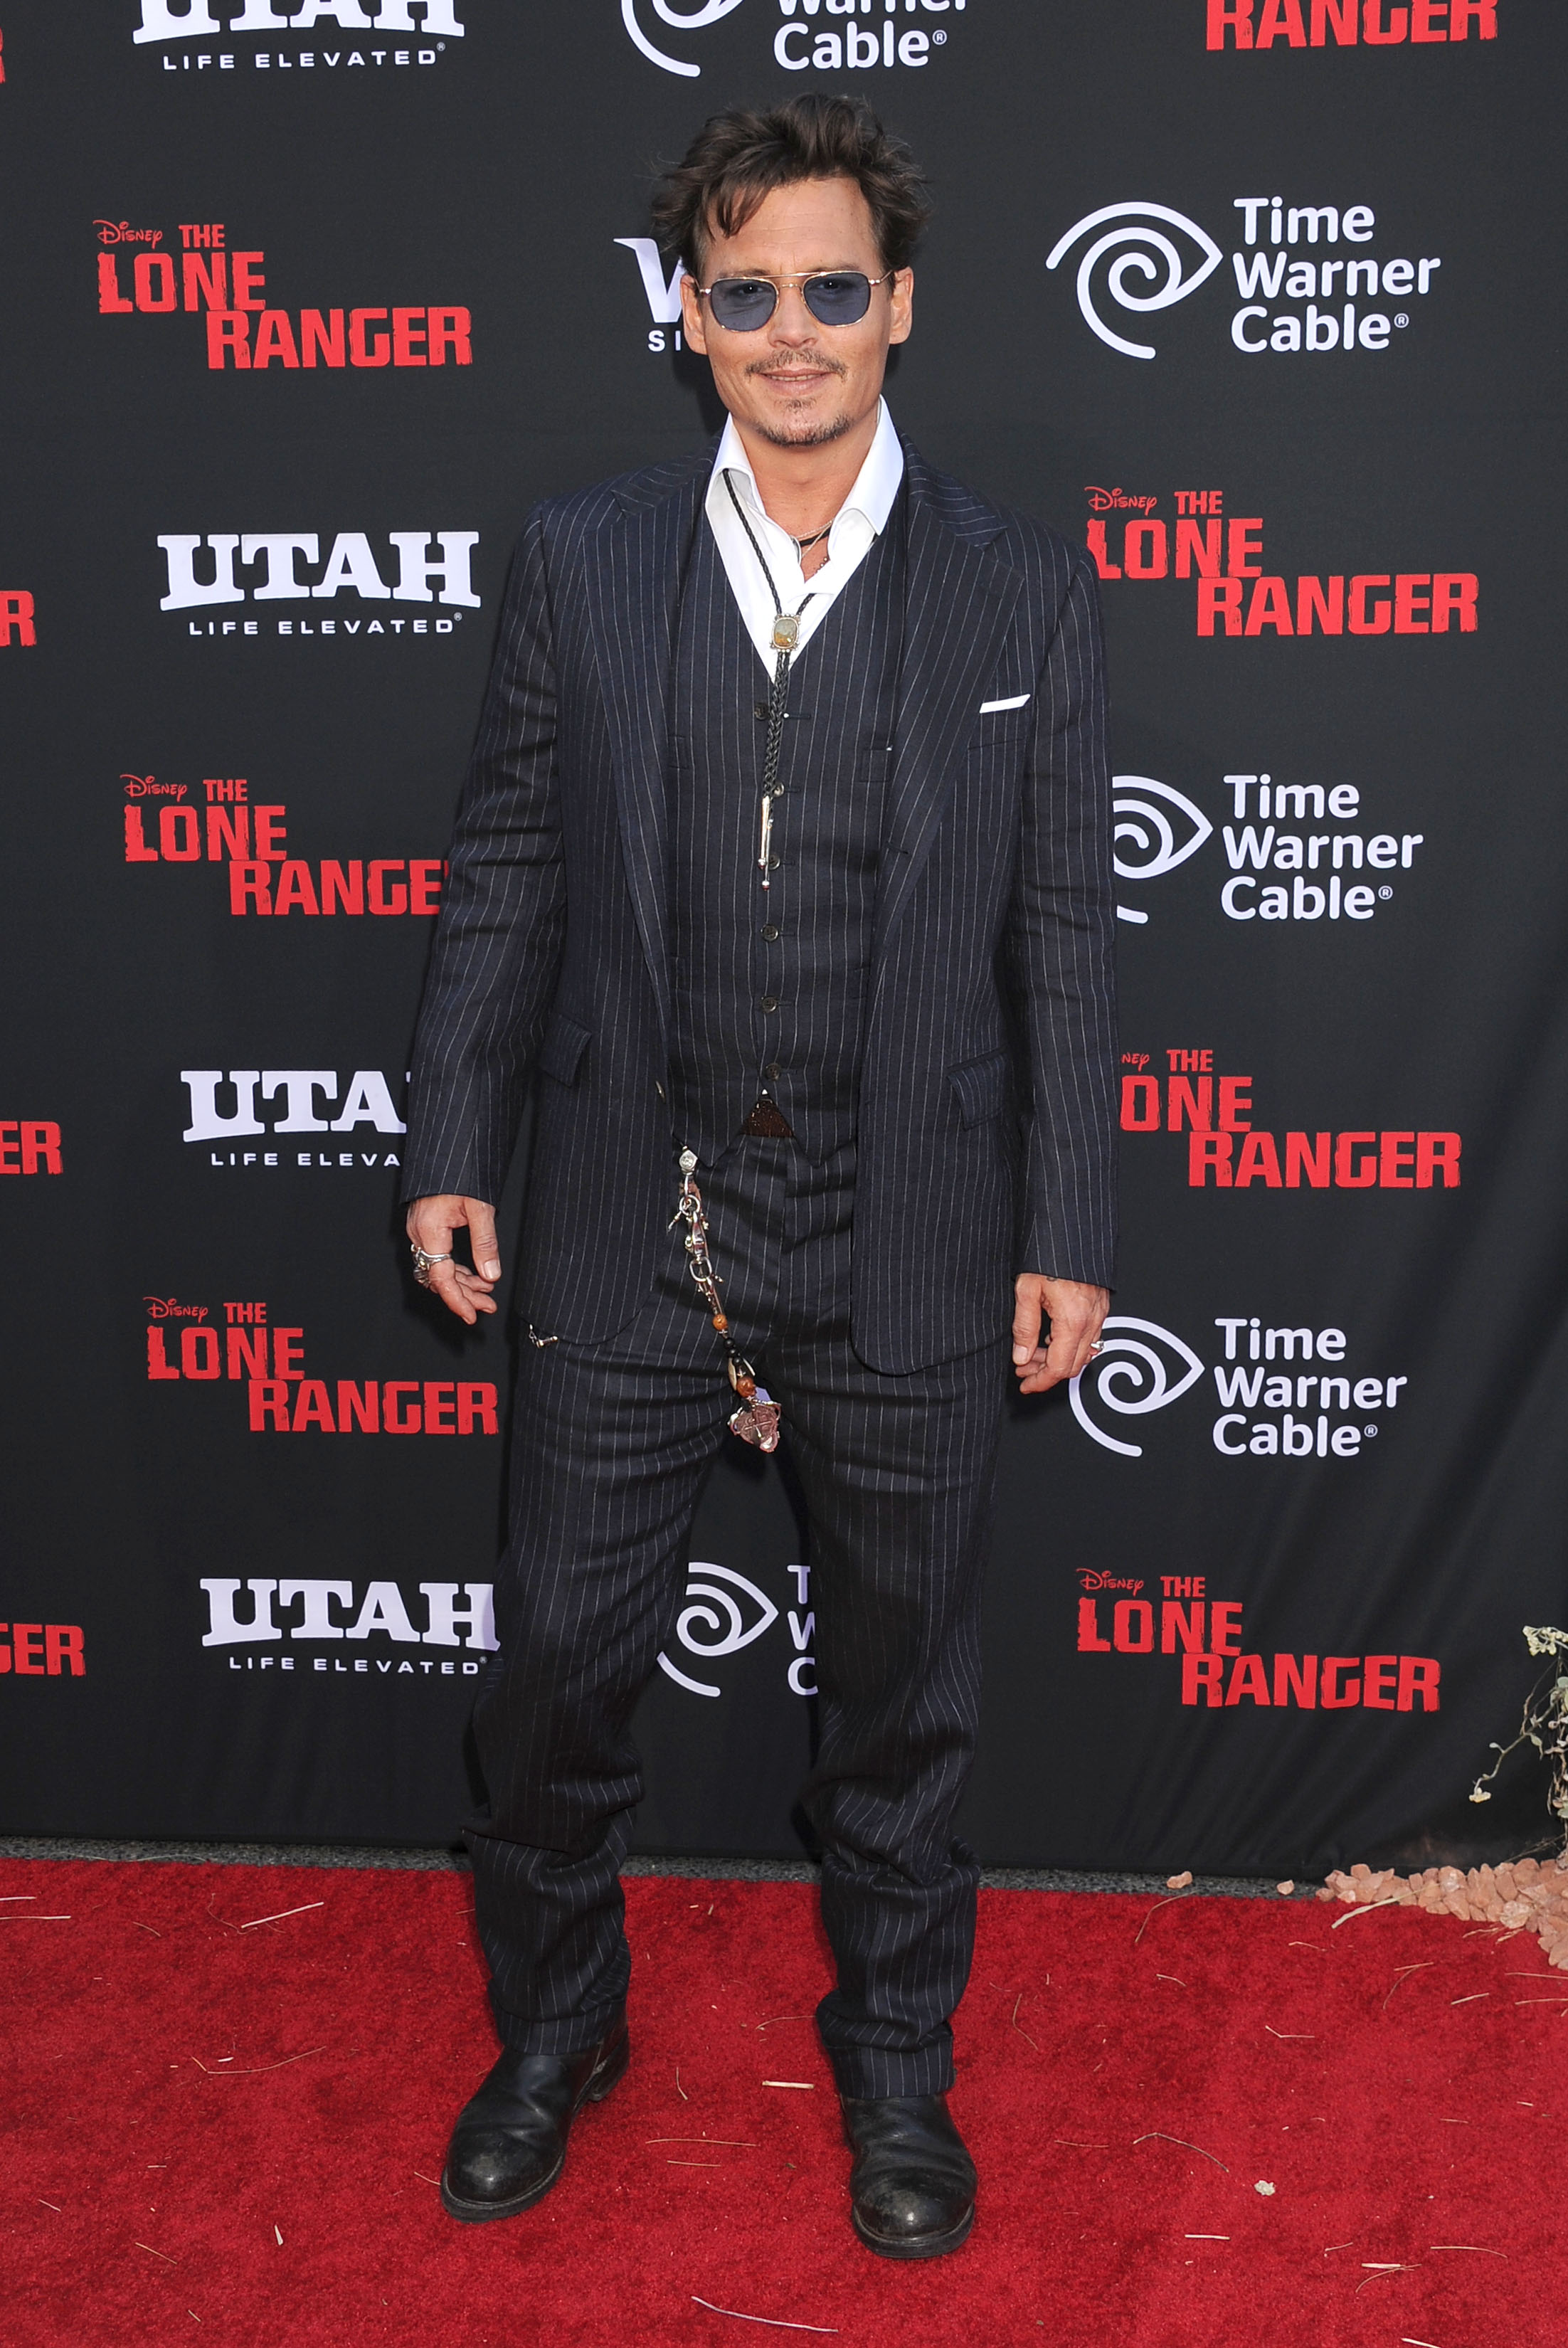 Johnny Depp bei der Weltpremiere von "The Lone Ranger" in Anaheim, Kalifornien am 22. Juni 2013 | Quelle: Getty Images